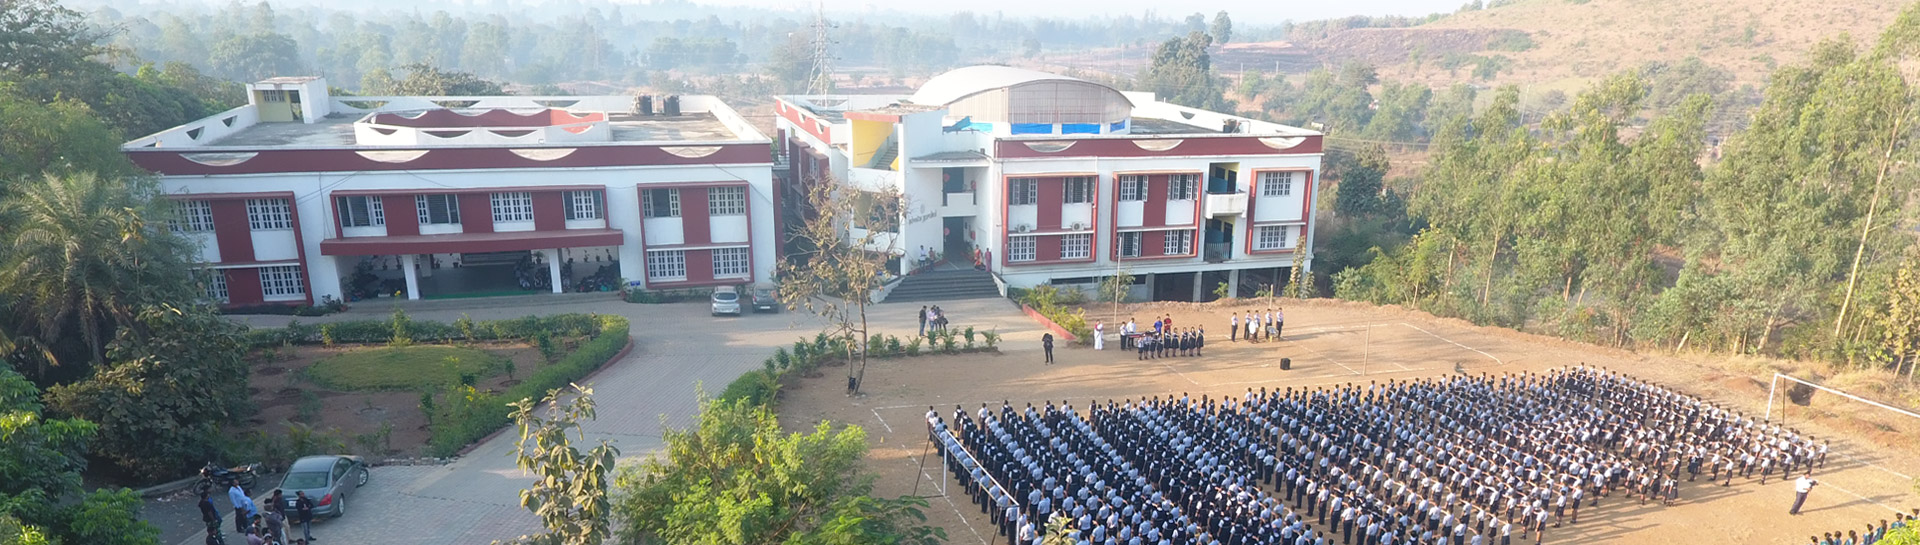 Advaita Gurukul school